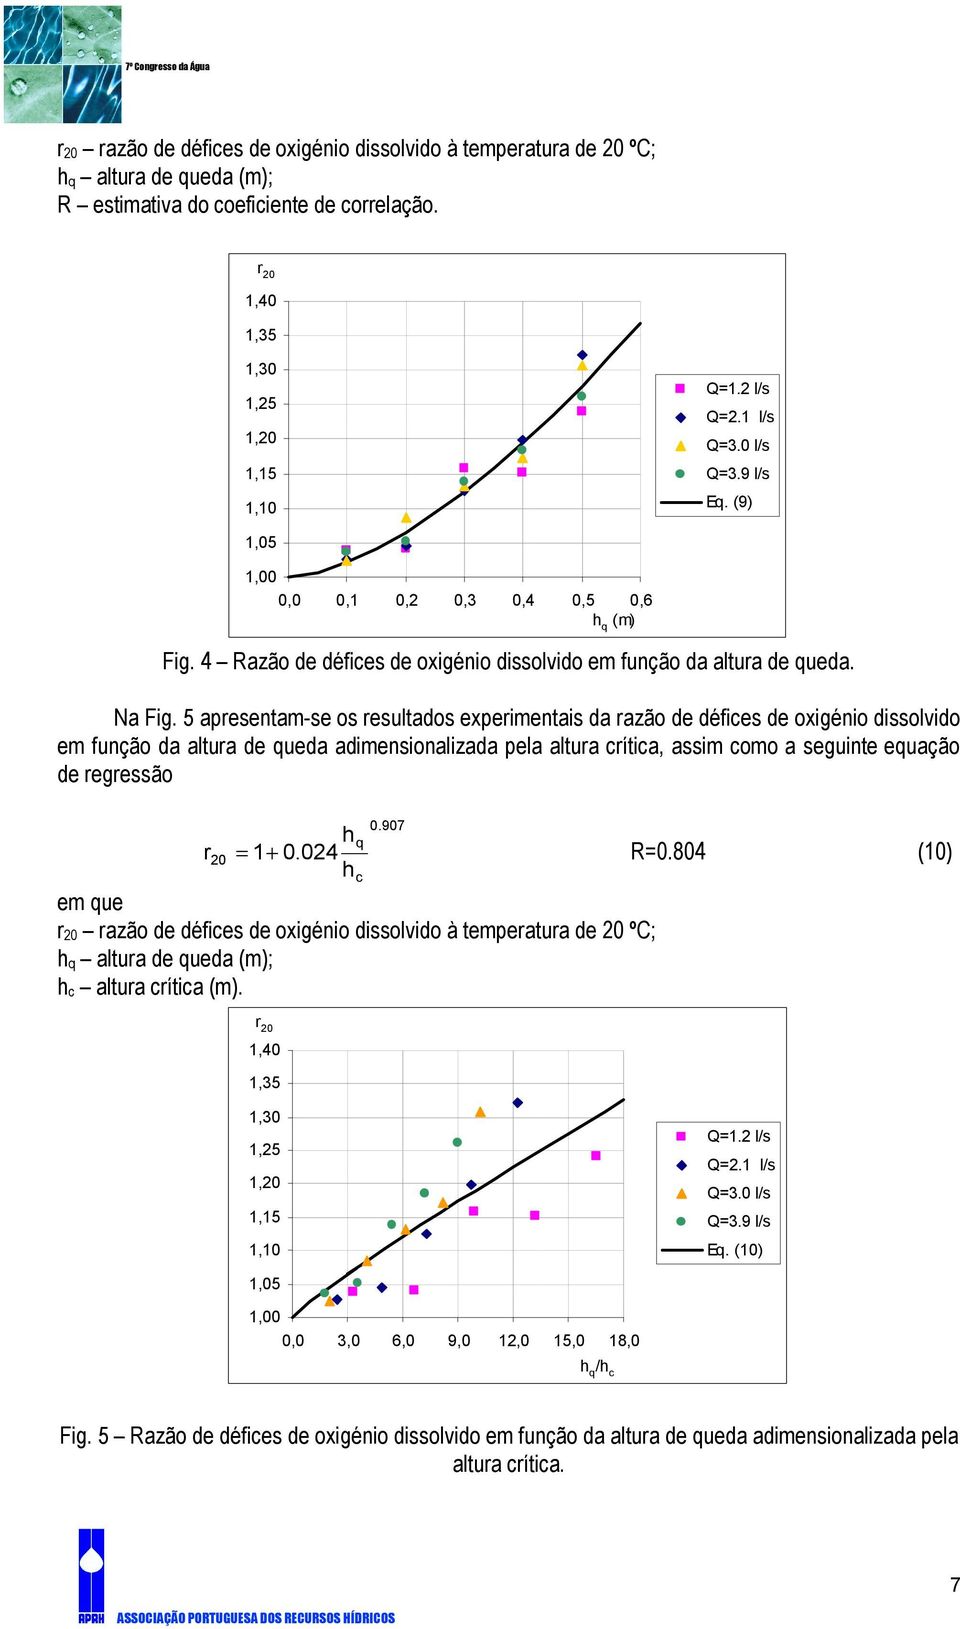 5 apresentam-se os resultados experimentais da razão de défices de oxigénio dissolvido em função da altura de queda adimensionalizada pela altura crítica, assim como a seguinte equação de regressão 0.